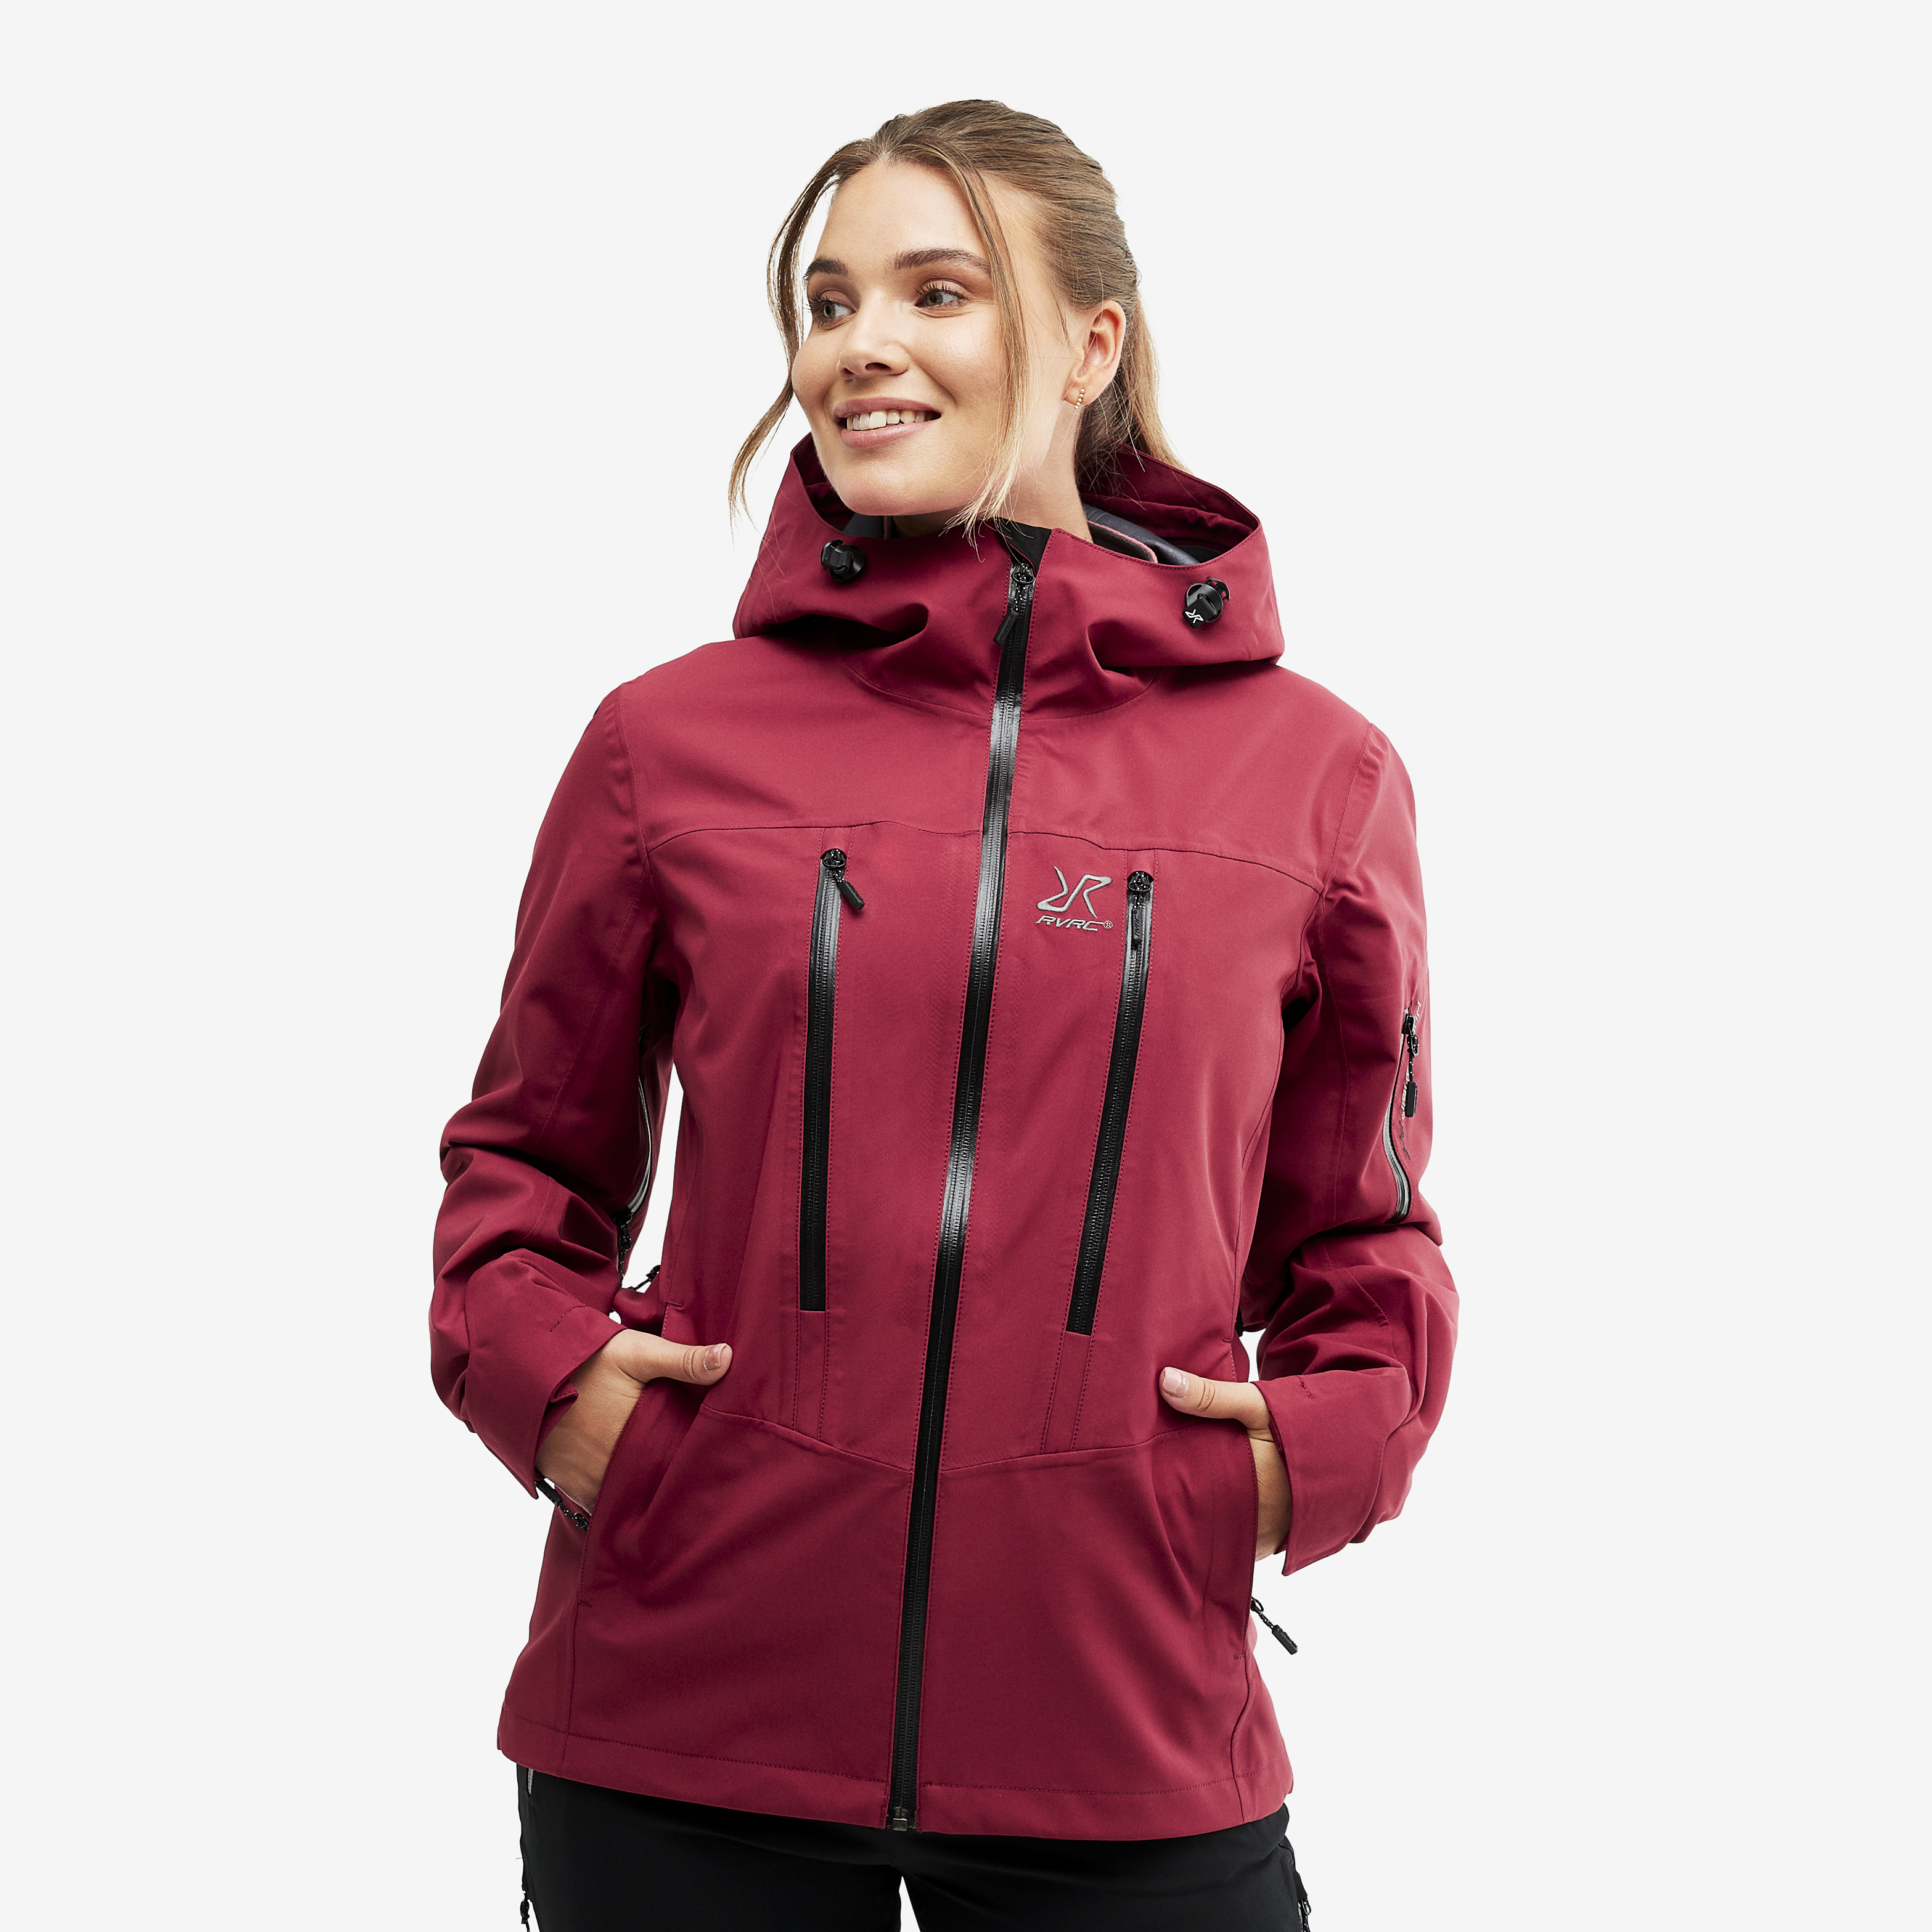 Whisper waterproof jacket for women in red